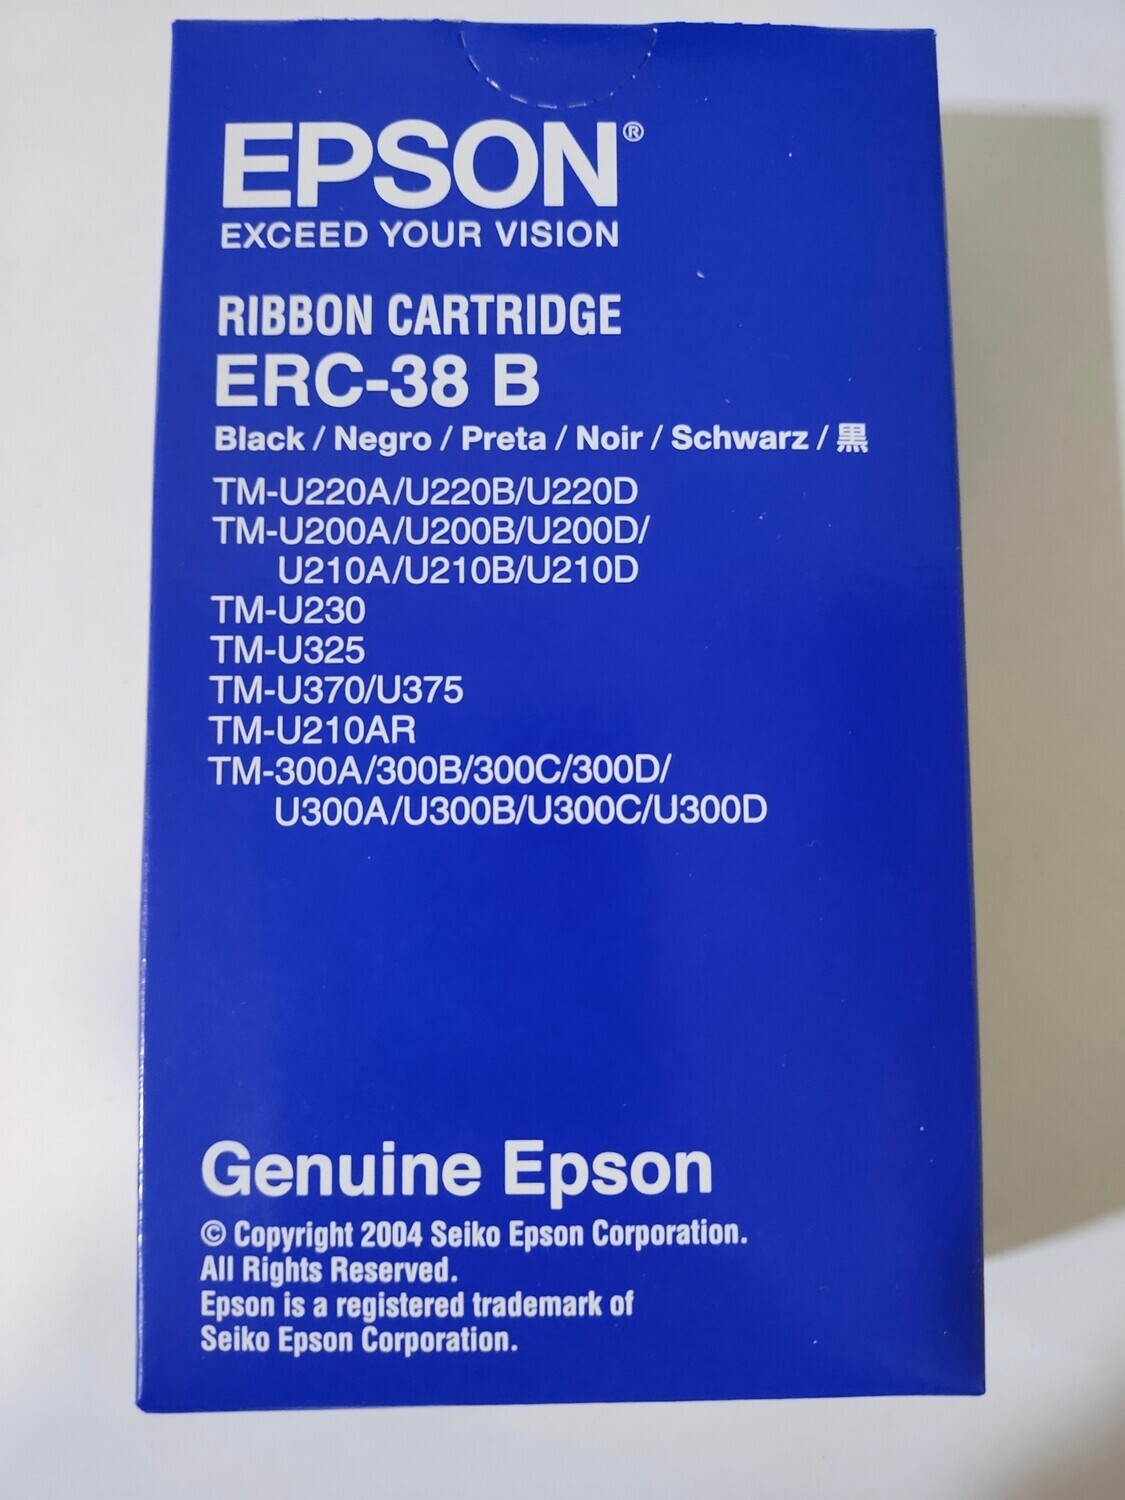 Epson ERC-38B Ribbon Cartridge